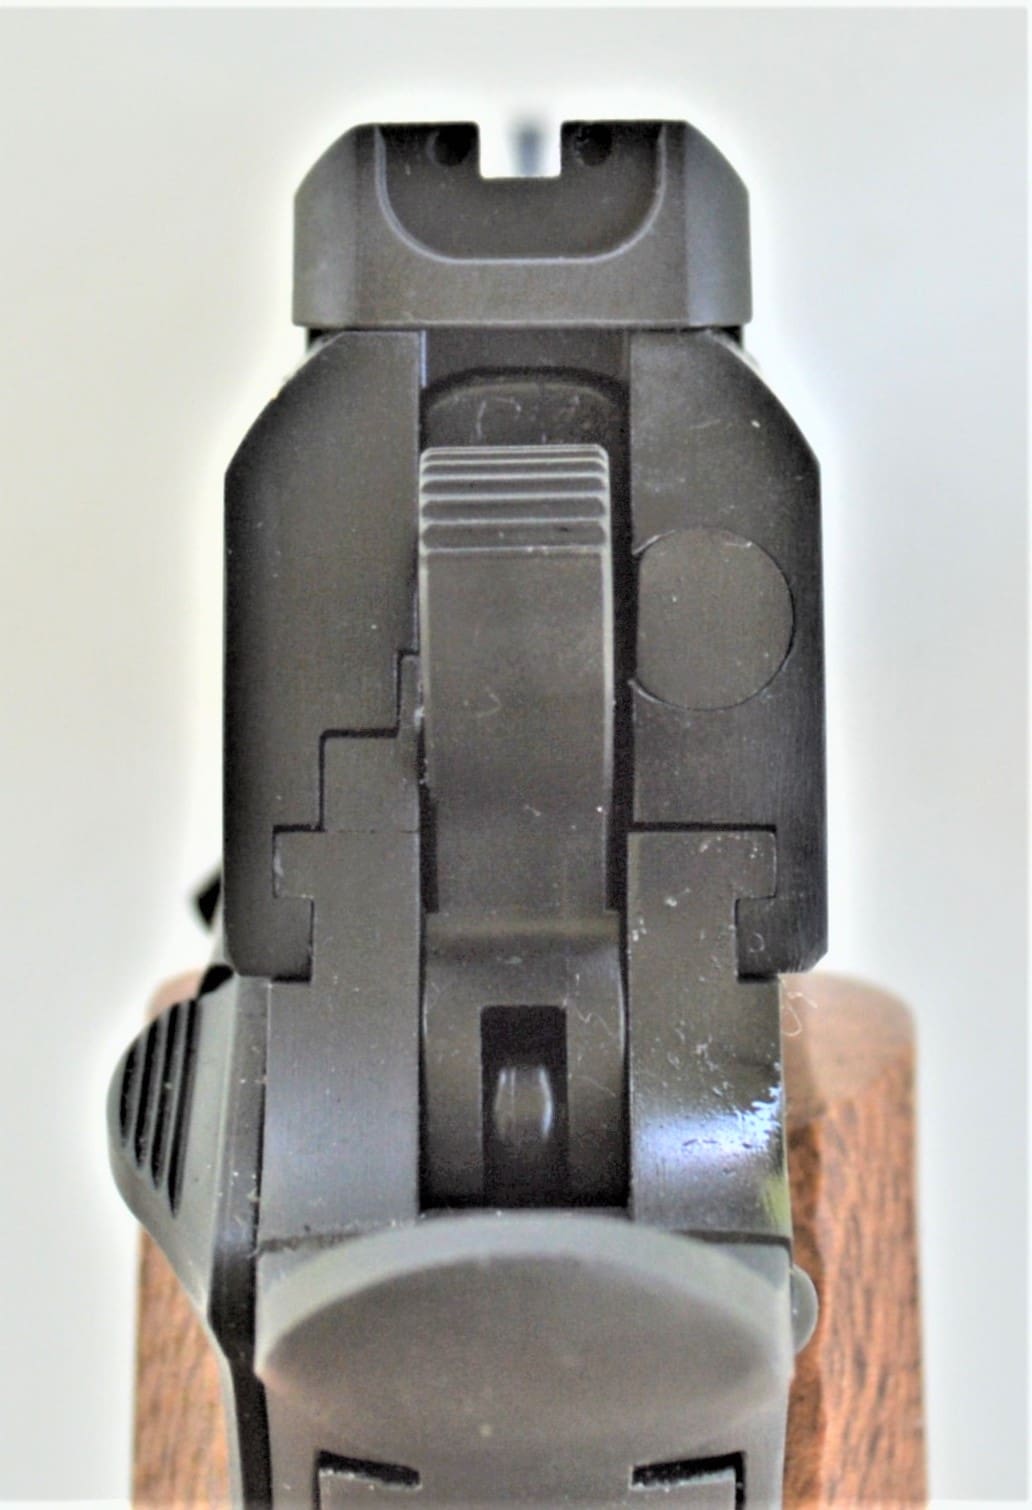 Citadel M1911 Officers's Model 9mm Pistol